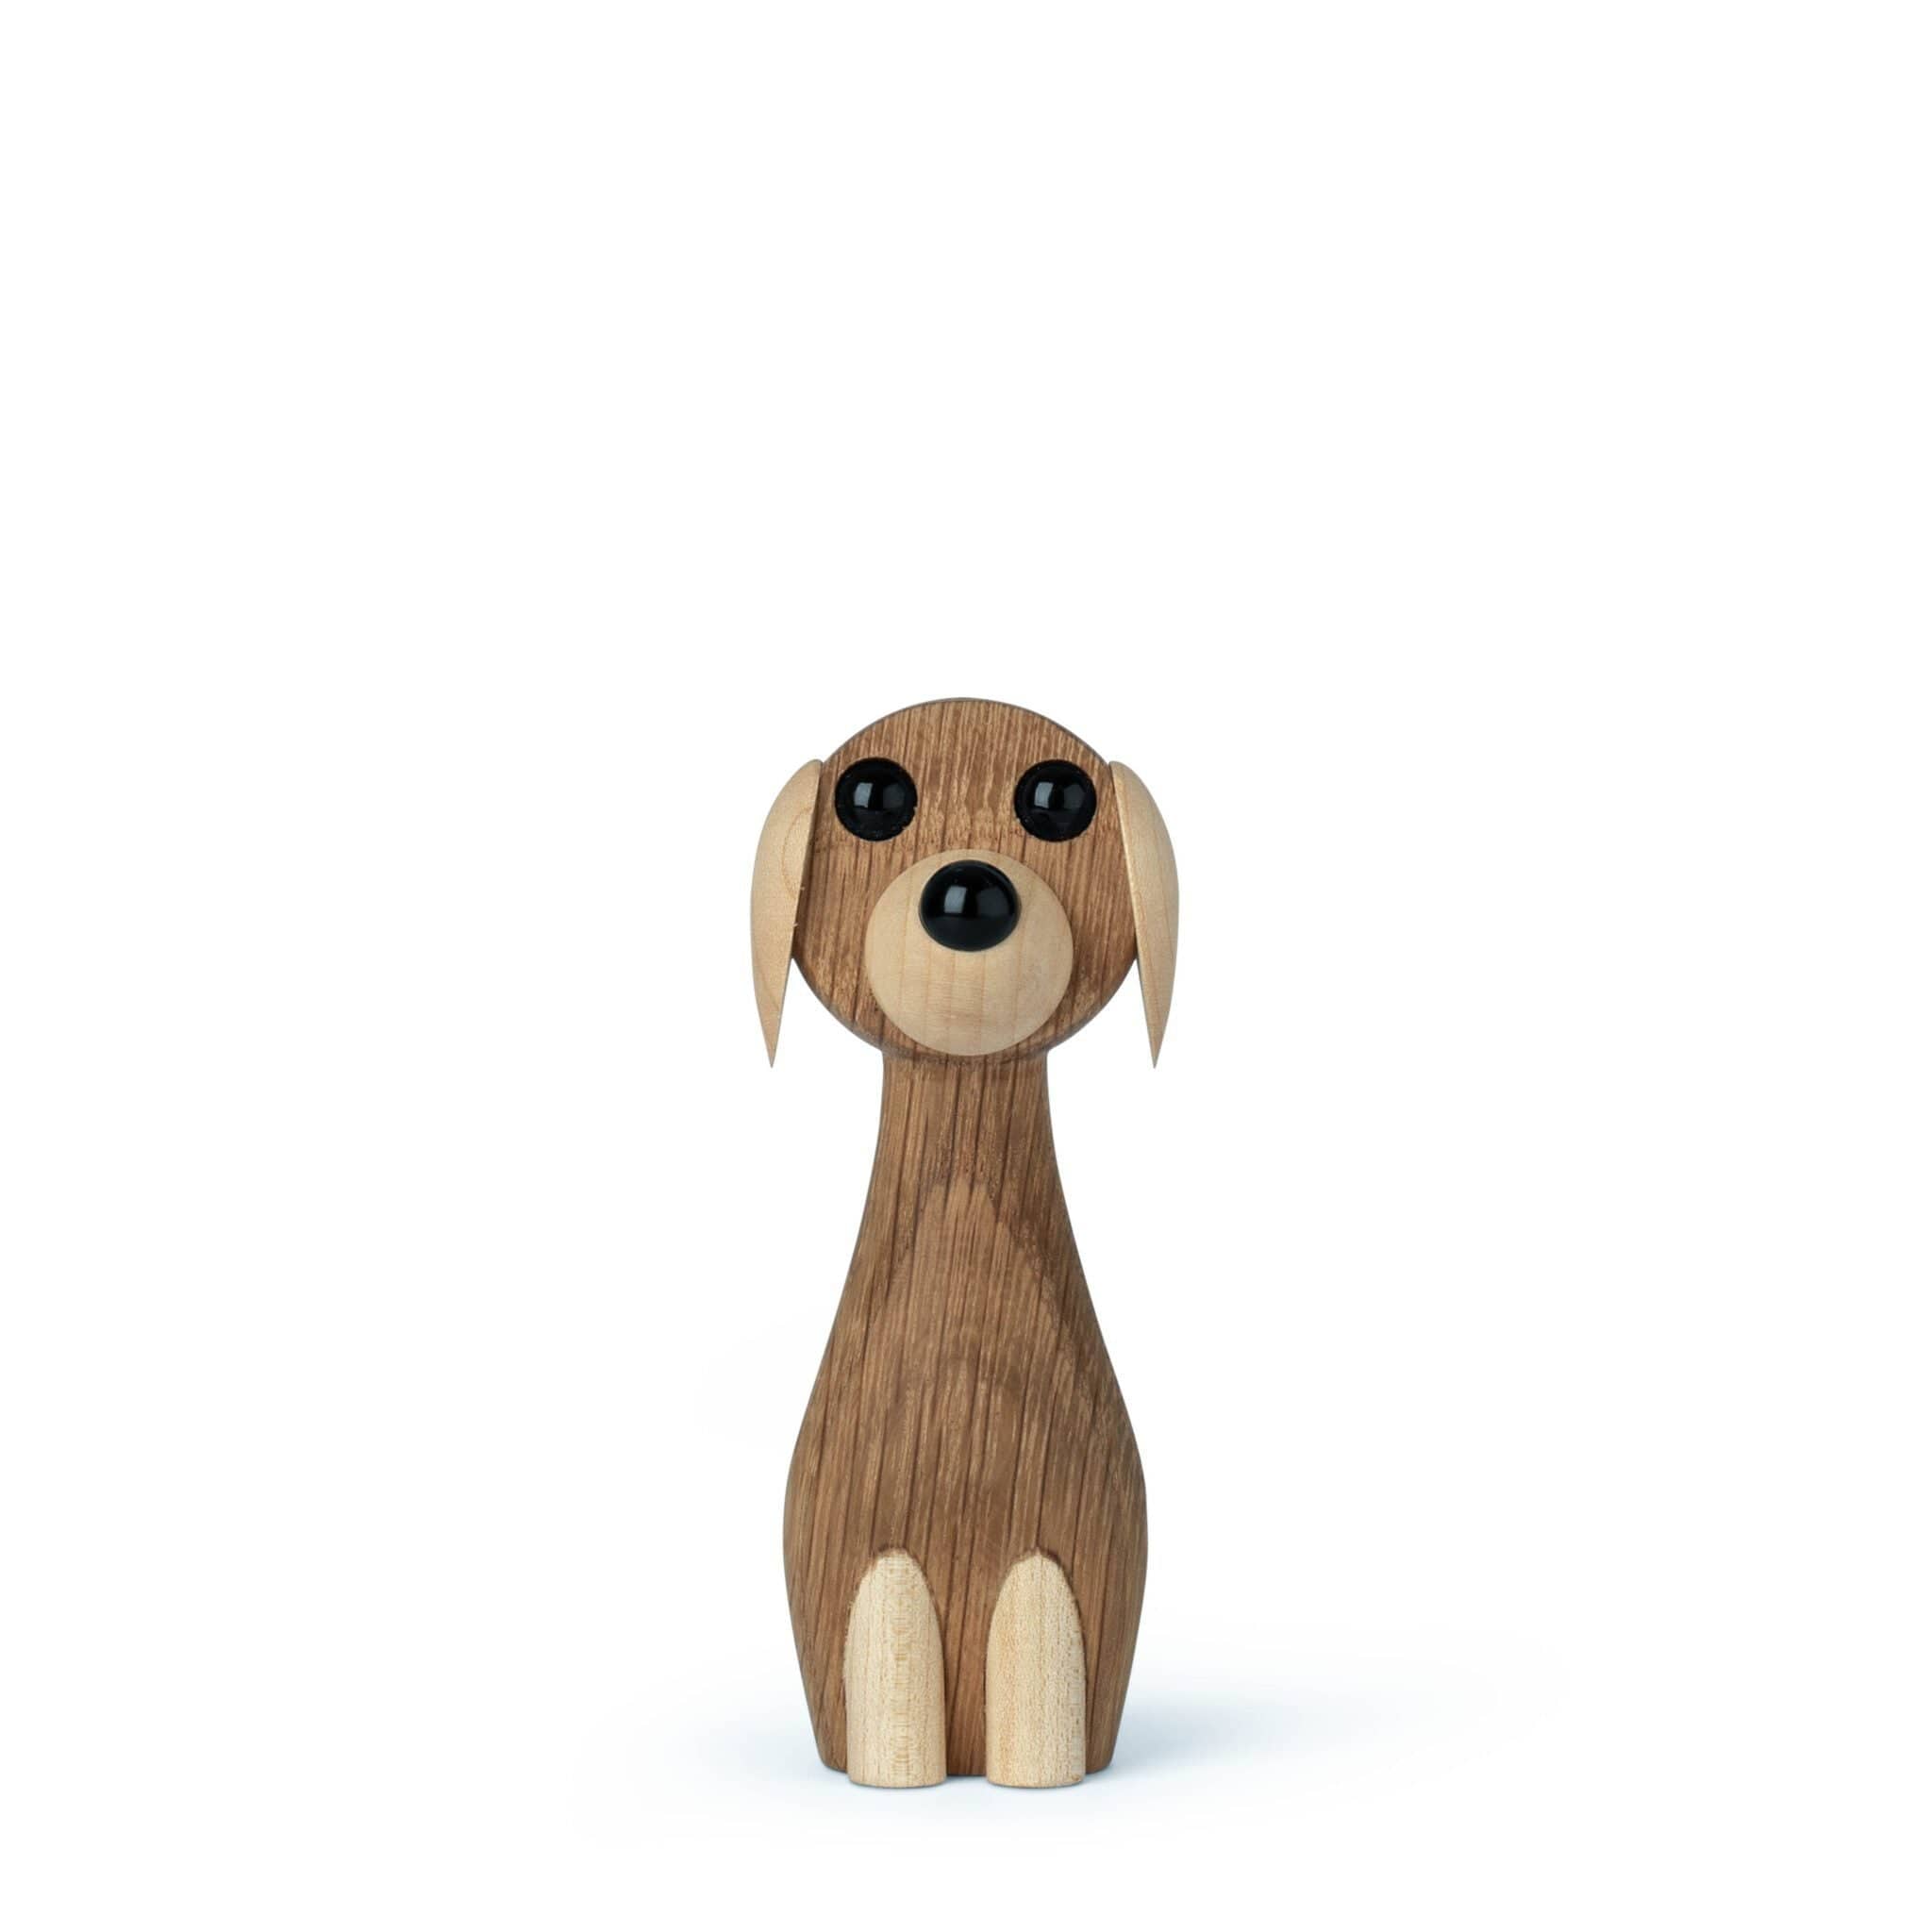 Gunnar flørning hundur tréfigur, 10,5 cm